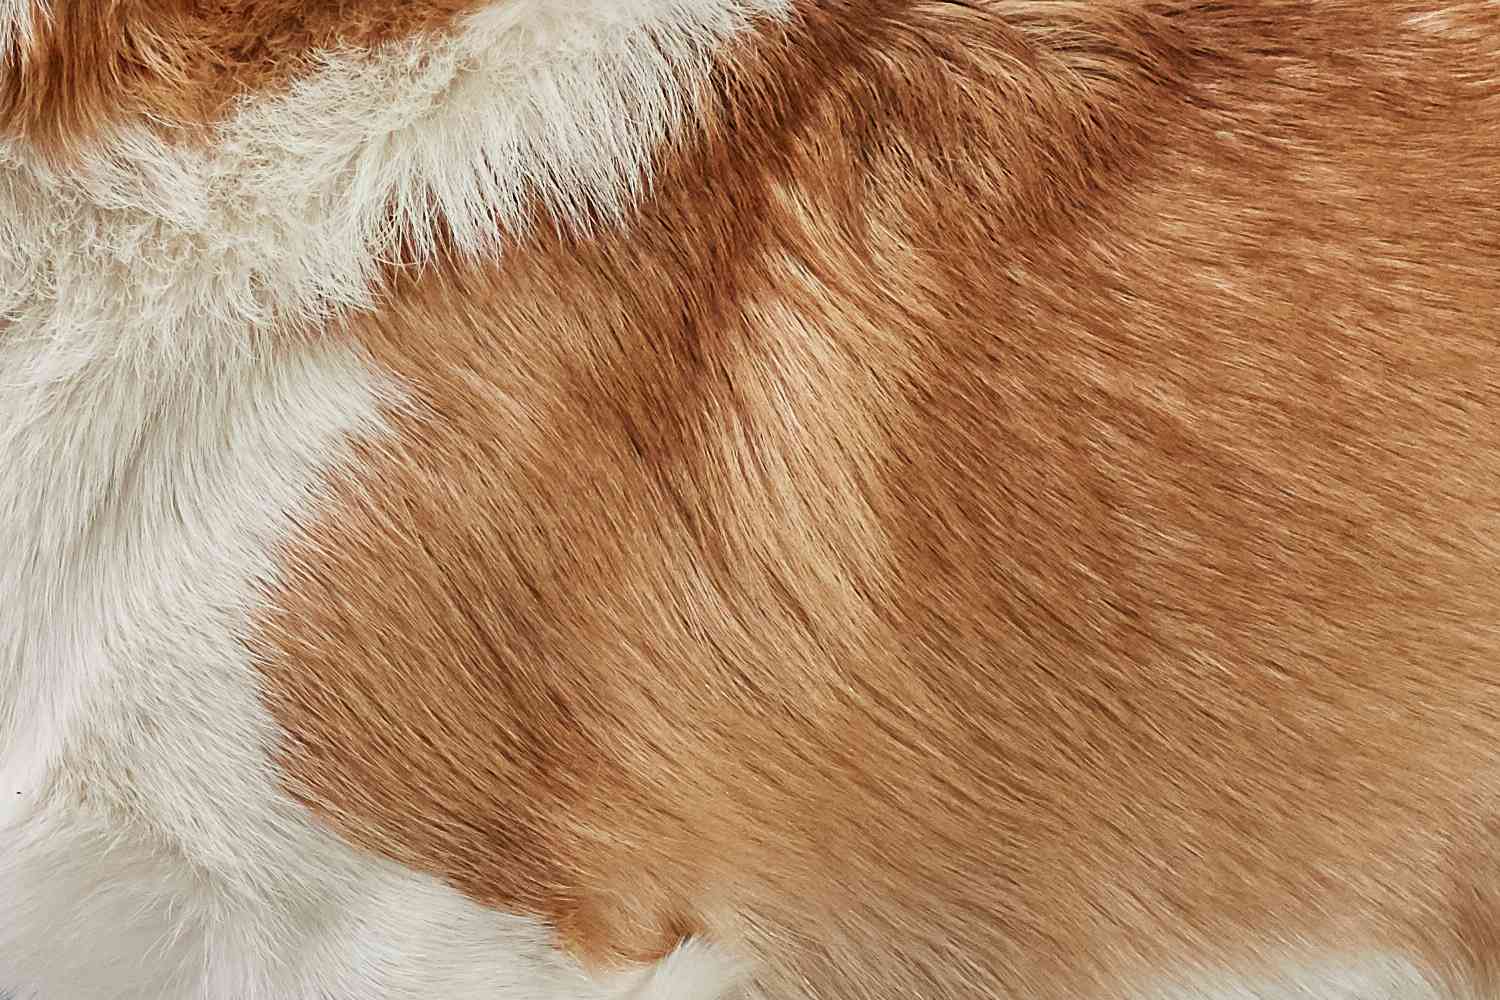 Closeup of a Pembroke Welsh Corgi's fur